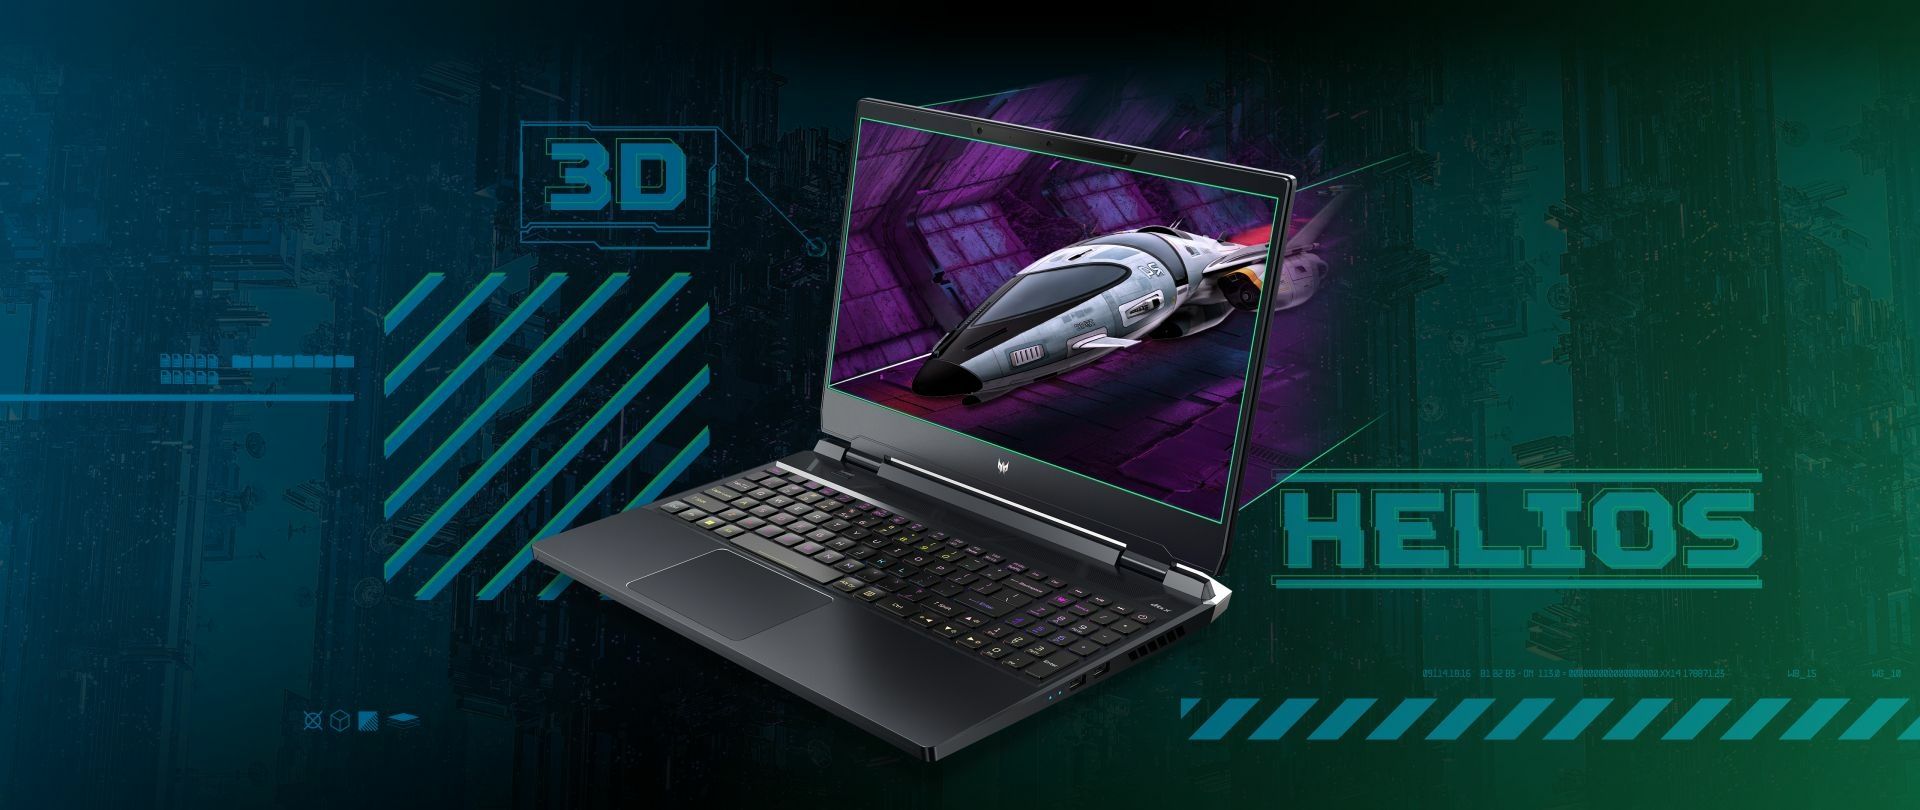 Acer Predator Helios 300 SpatialLabs Edition 02.